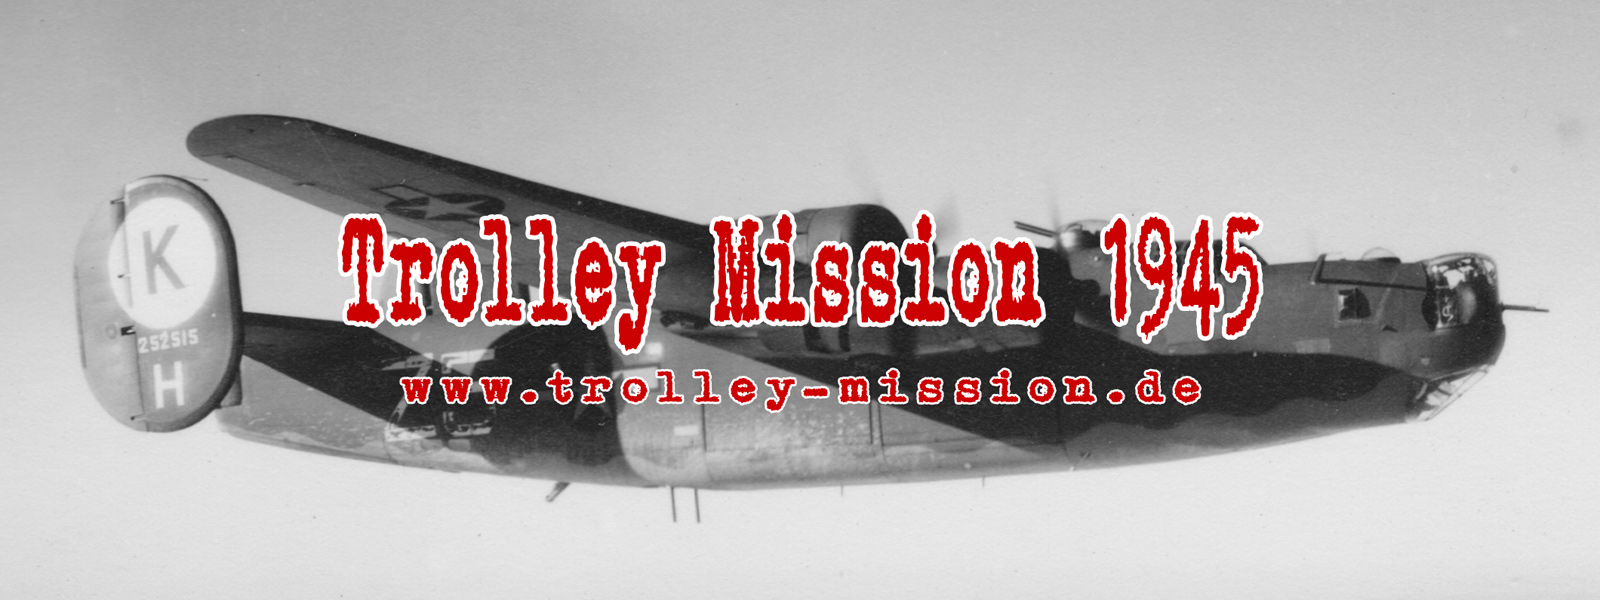 Trolley Mission 1945